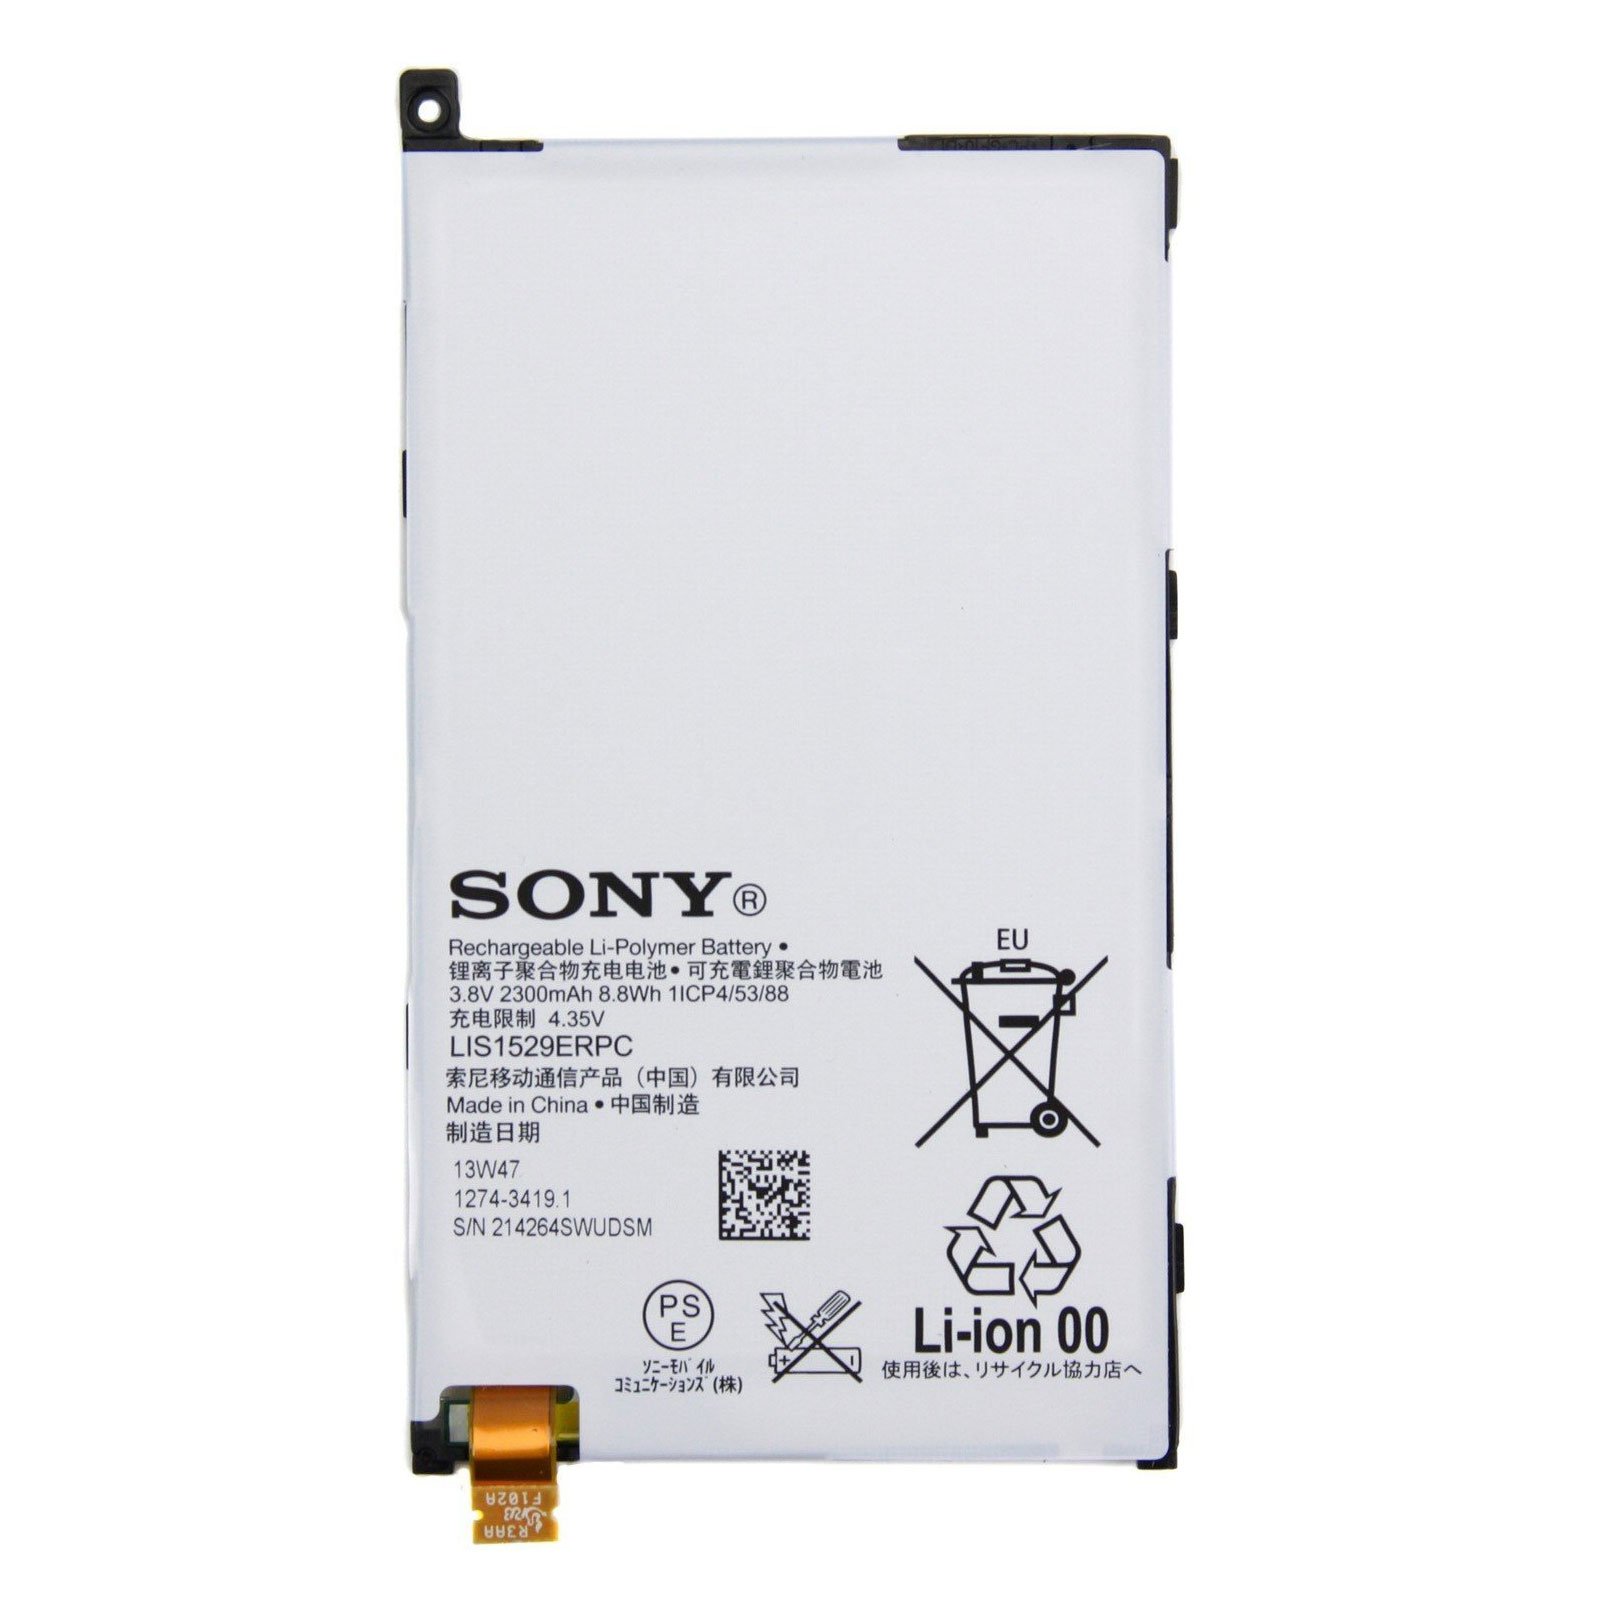 Sony xperia батарея. Аккумулятор Sony Xperia z1 d5503 lis1529erpc. Sony z1 Compact АКБ. Sony Xperia z1 Compact 5503 аккумулятор. Аккумулятор Sony Xperia z5 Compact.